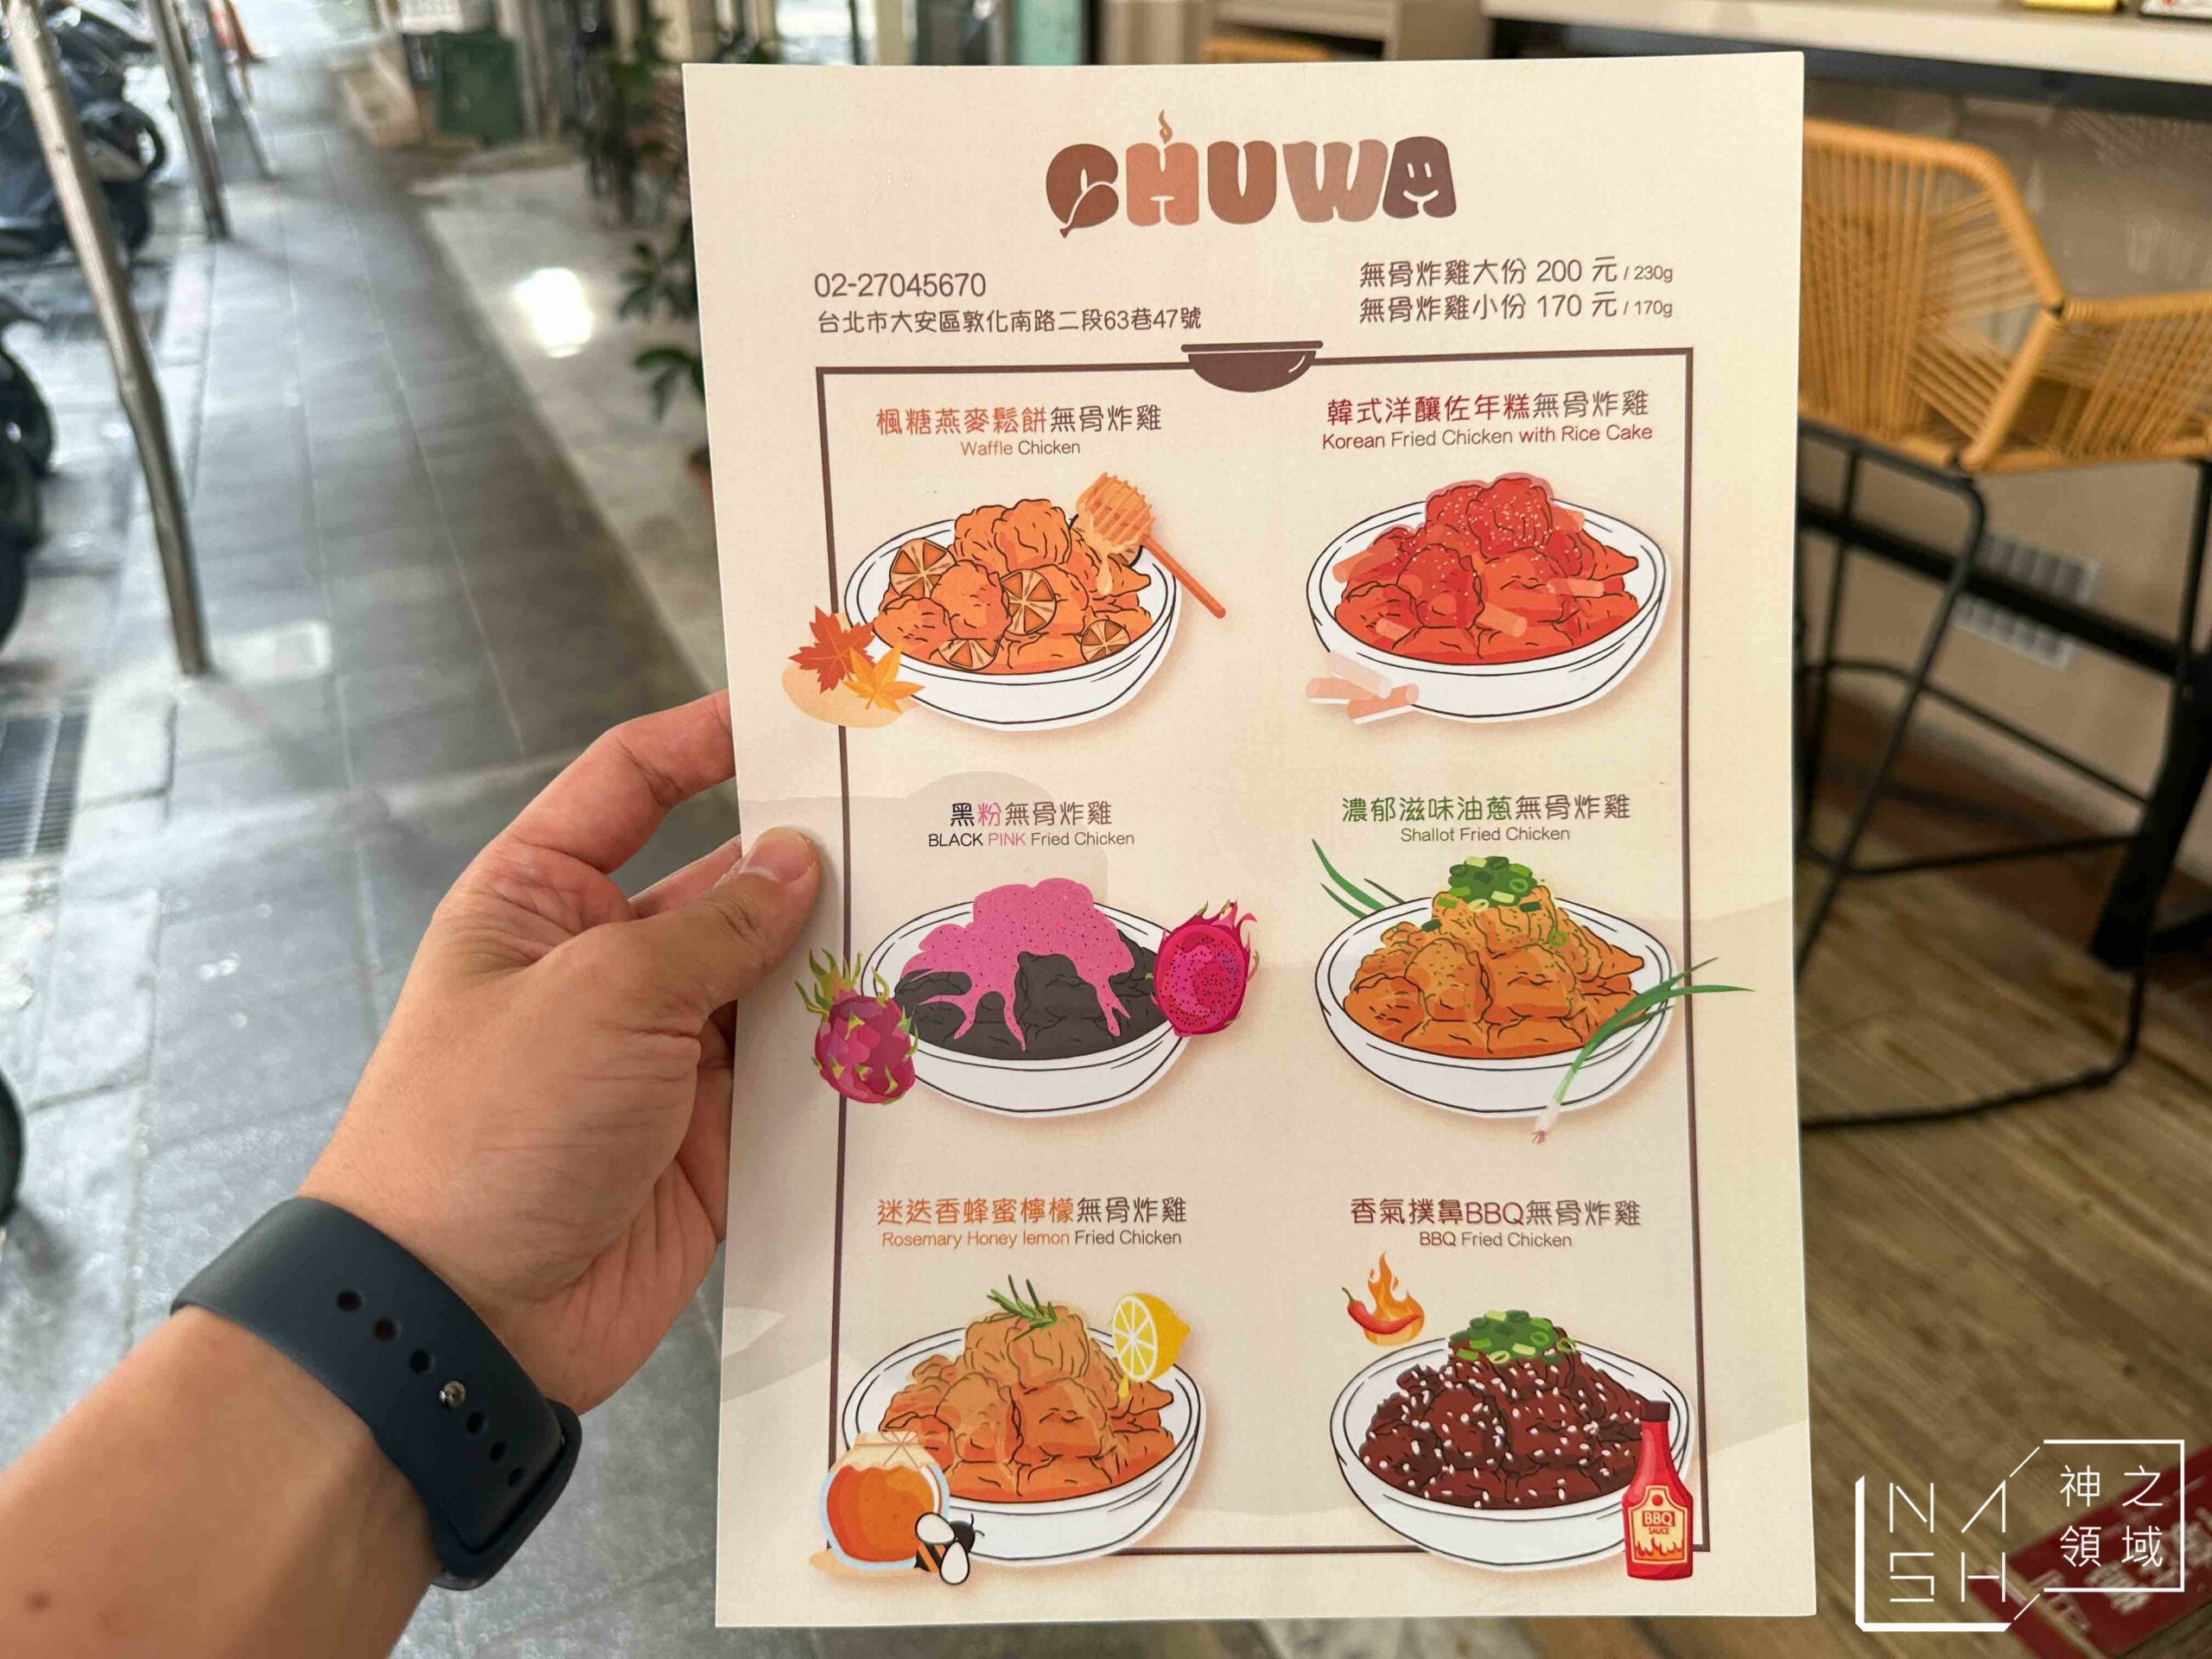 Chuwa Chicken